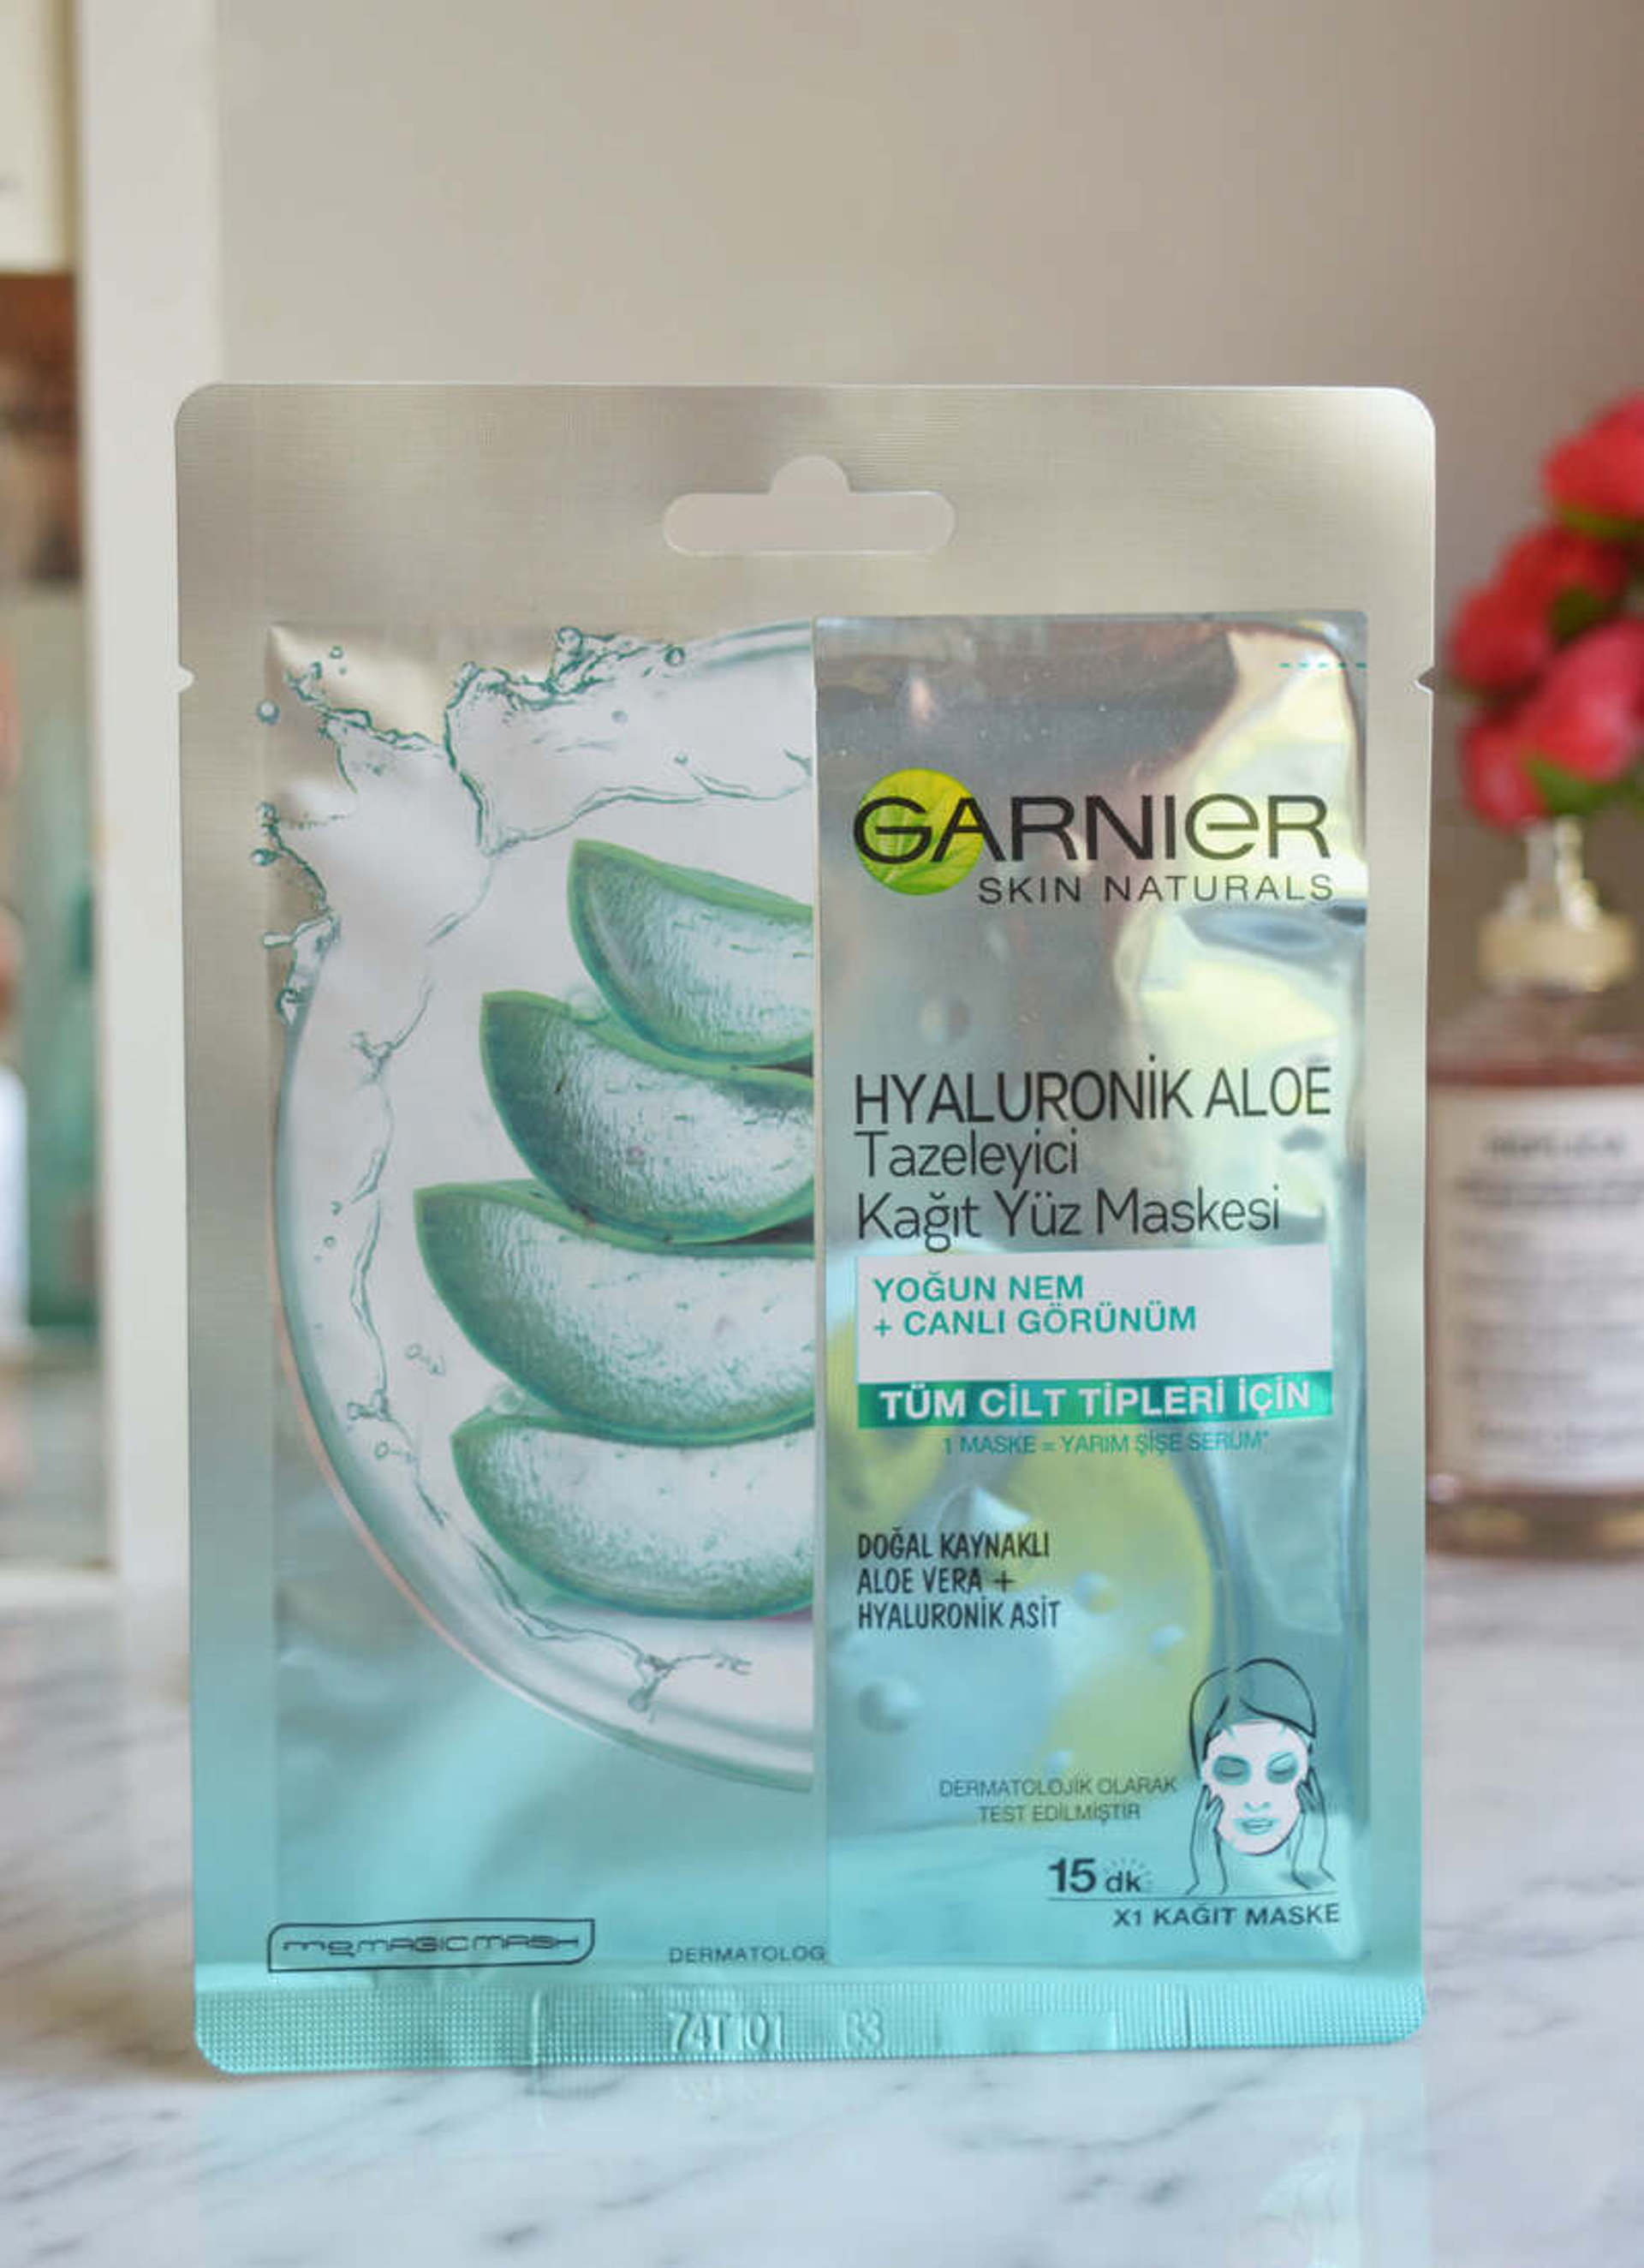 Garnier Hyaluronik Aloe Tazeleyici Kâğıt Yüz Maskesi Yorum